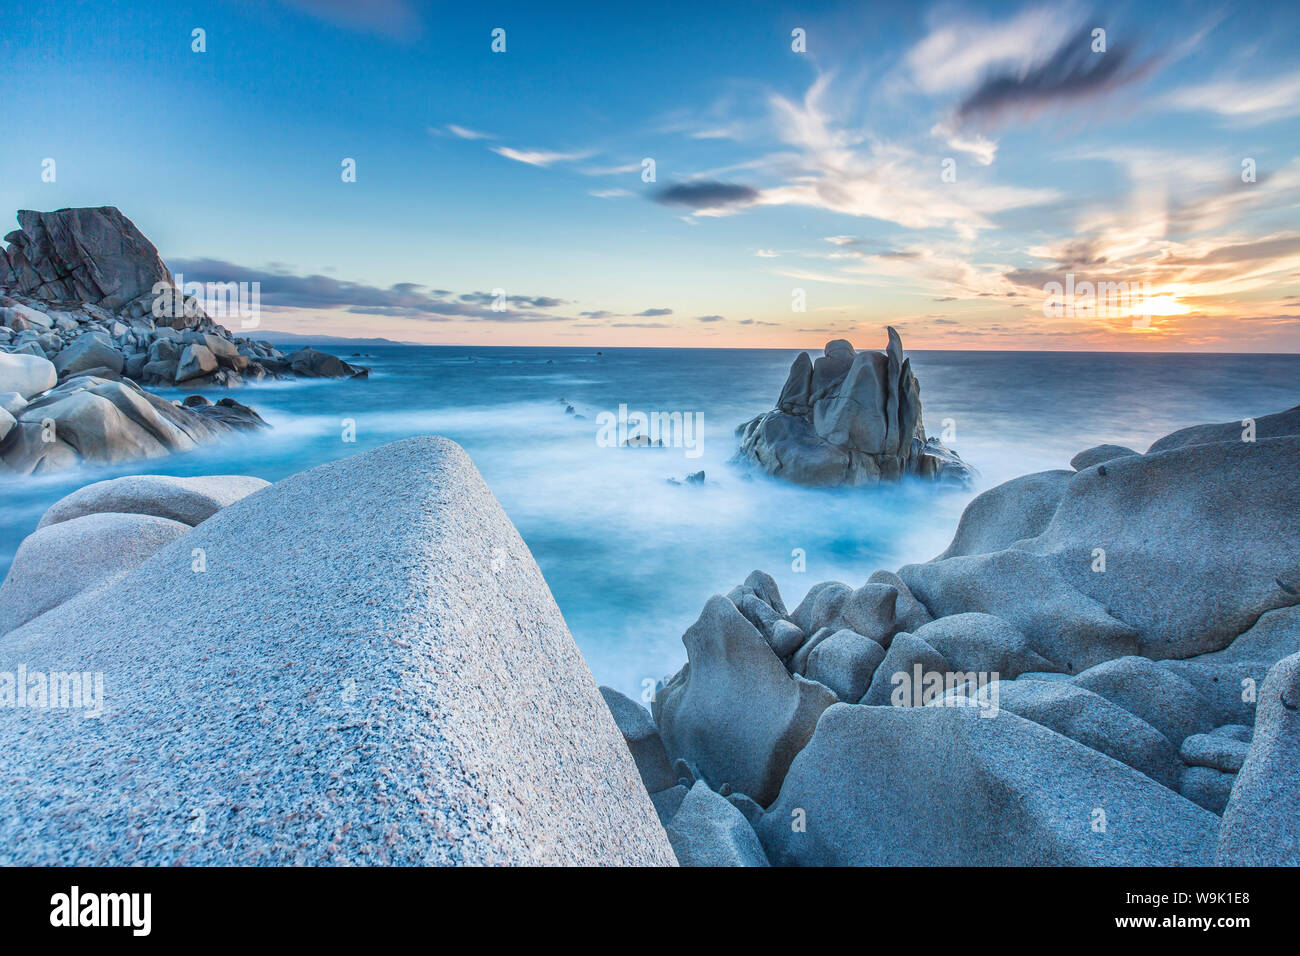 Vagues sur les rochers lisses de la péninsule de Capo Testa, par Santa Teresa di Gallura, Sardaigne, Italie, Méditerranée, Europe Banque D'Images